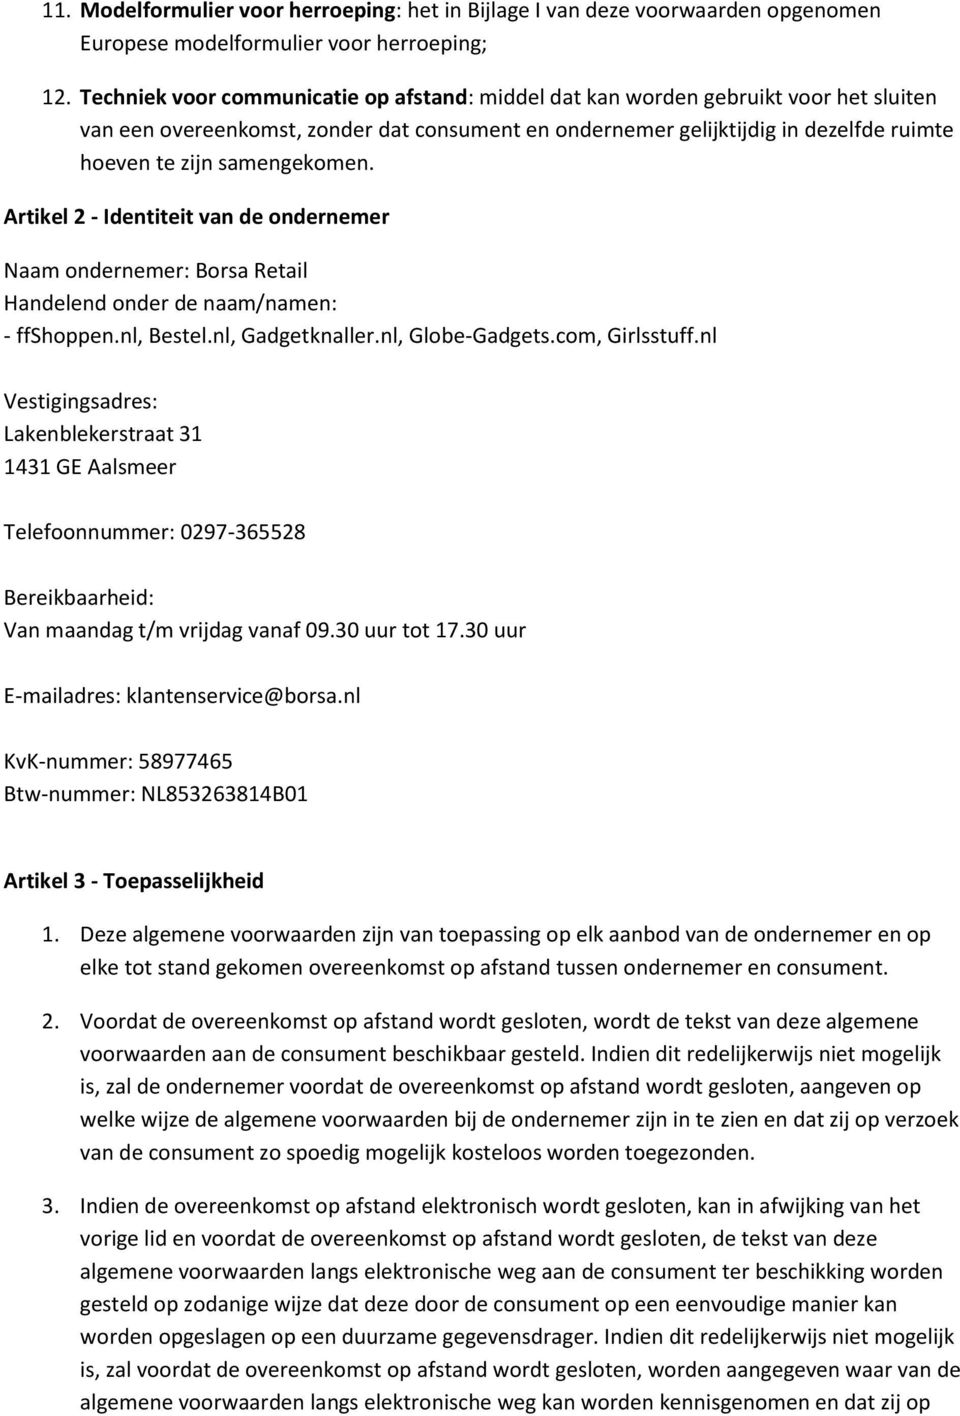 Artikel 2 - Identiteit van de ndernemer Naam ndernemer: Brsa Retail Handelend nder de naam/namen: - ffshppen.nl, Bestel.nl, Gadgetknaller.nl, Glbe-Gadgets.cm, Girlsstuff.